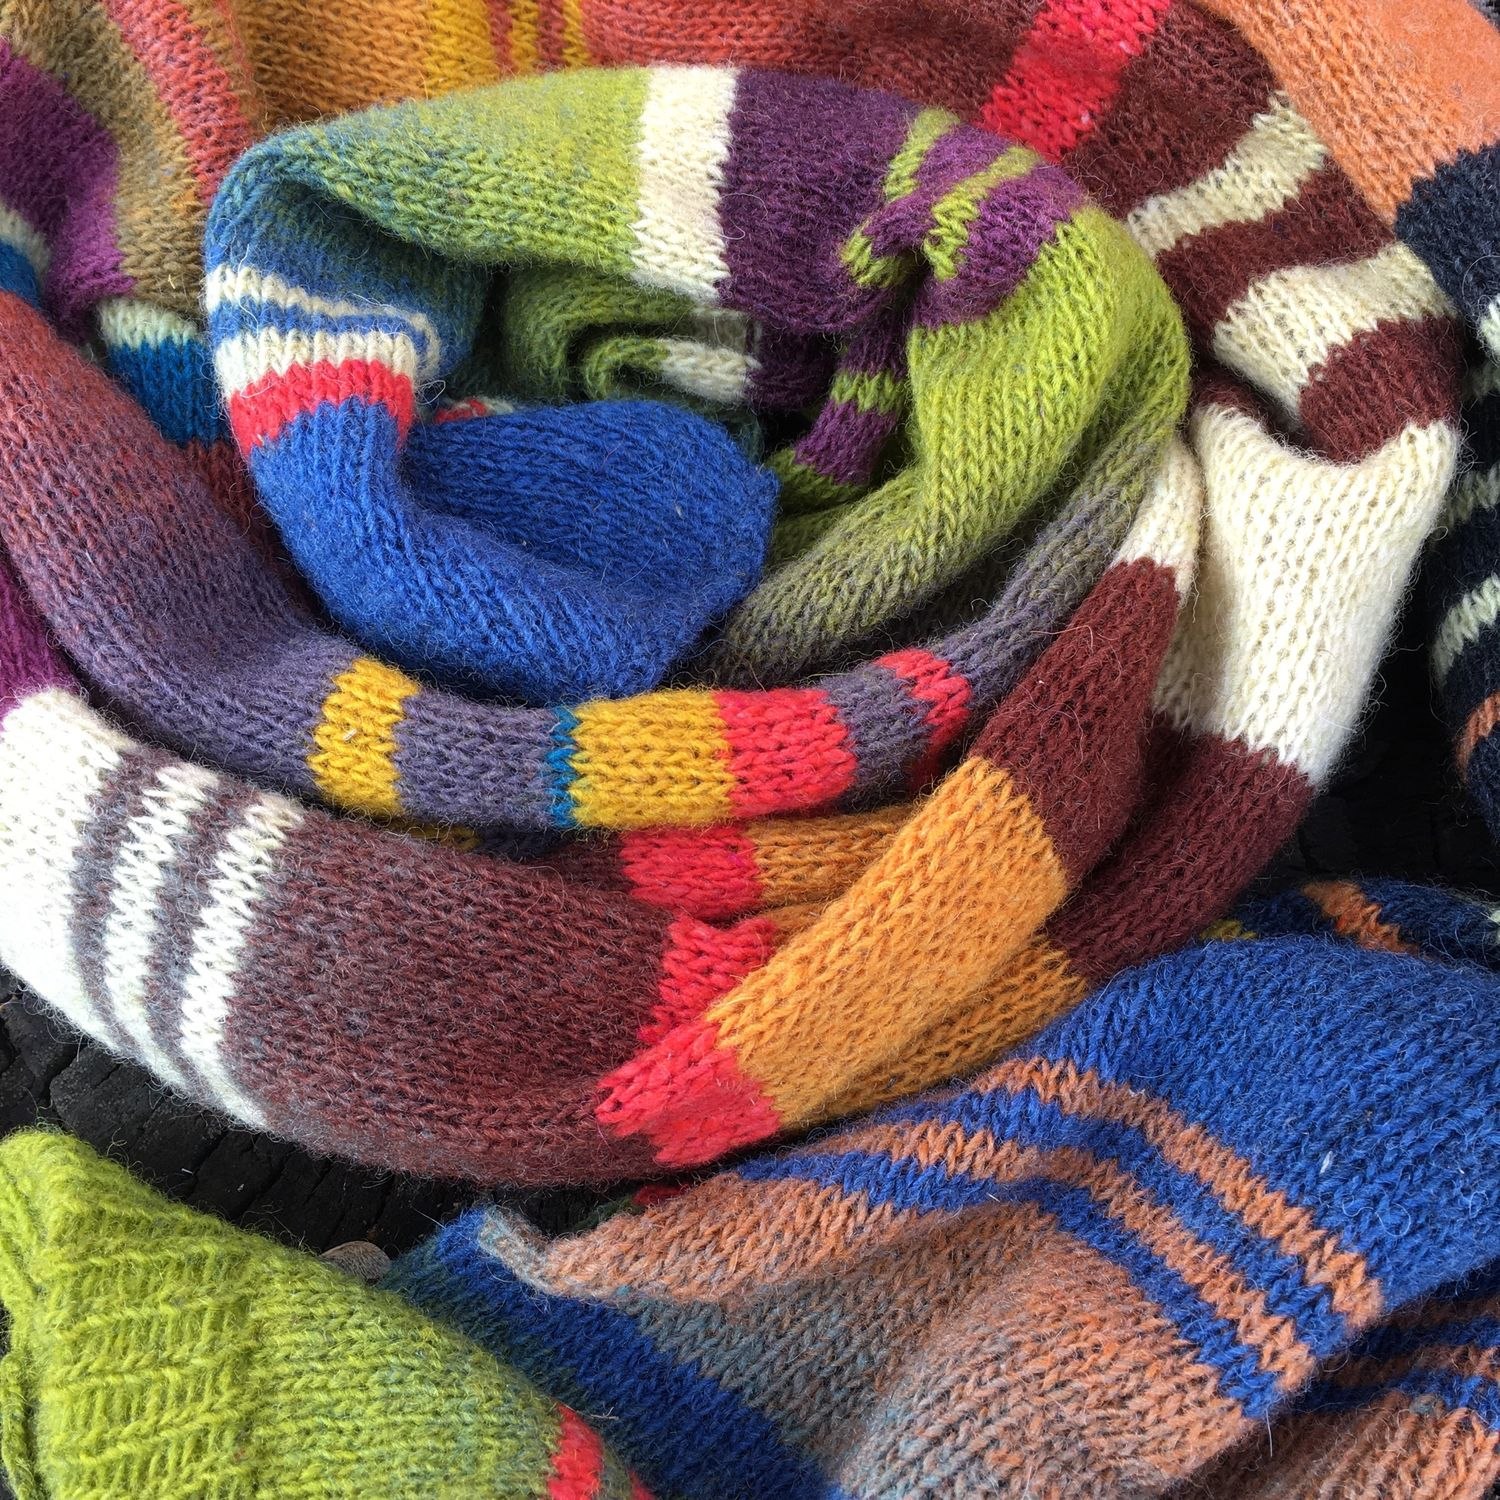 Цветной шарф. Полосатый шарф. Вязаный шарф в полоску. Разноцветный шарф в полоску. Многоцветные вязаные шарфы.